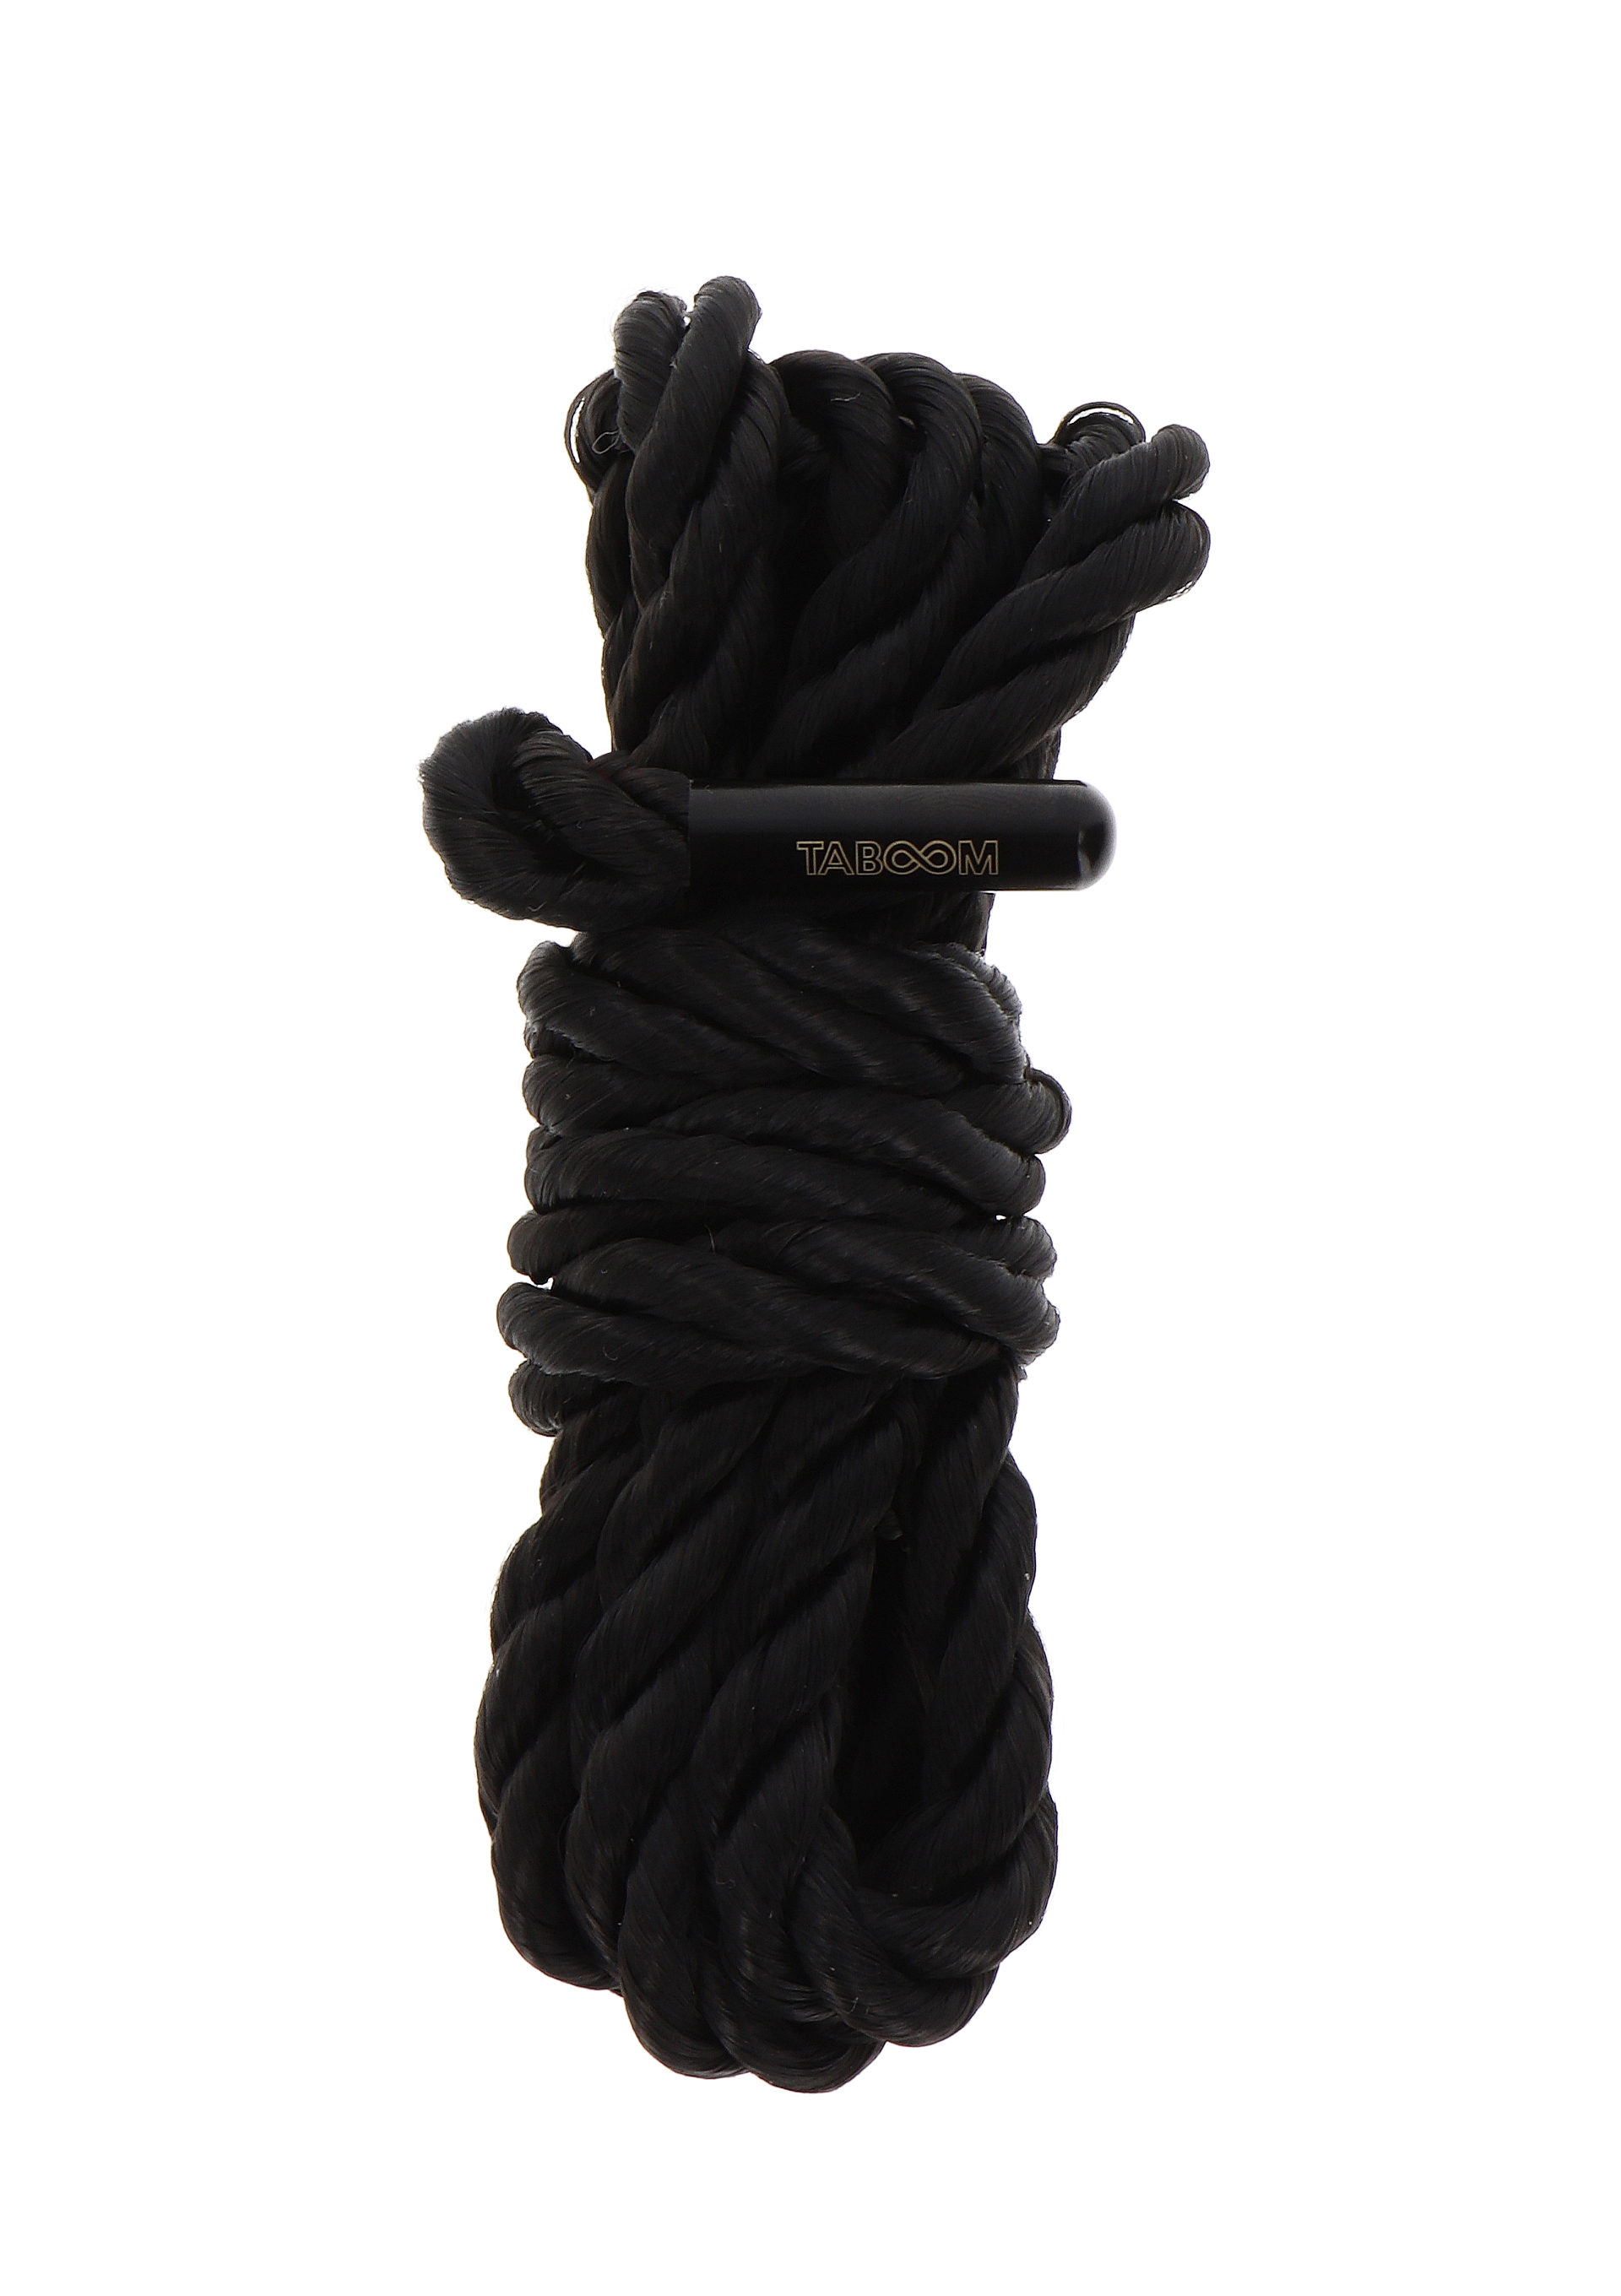 Taboom - Taboom Bondage Rope 1.5 meter 7mm Black